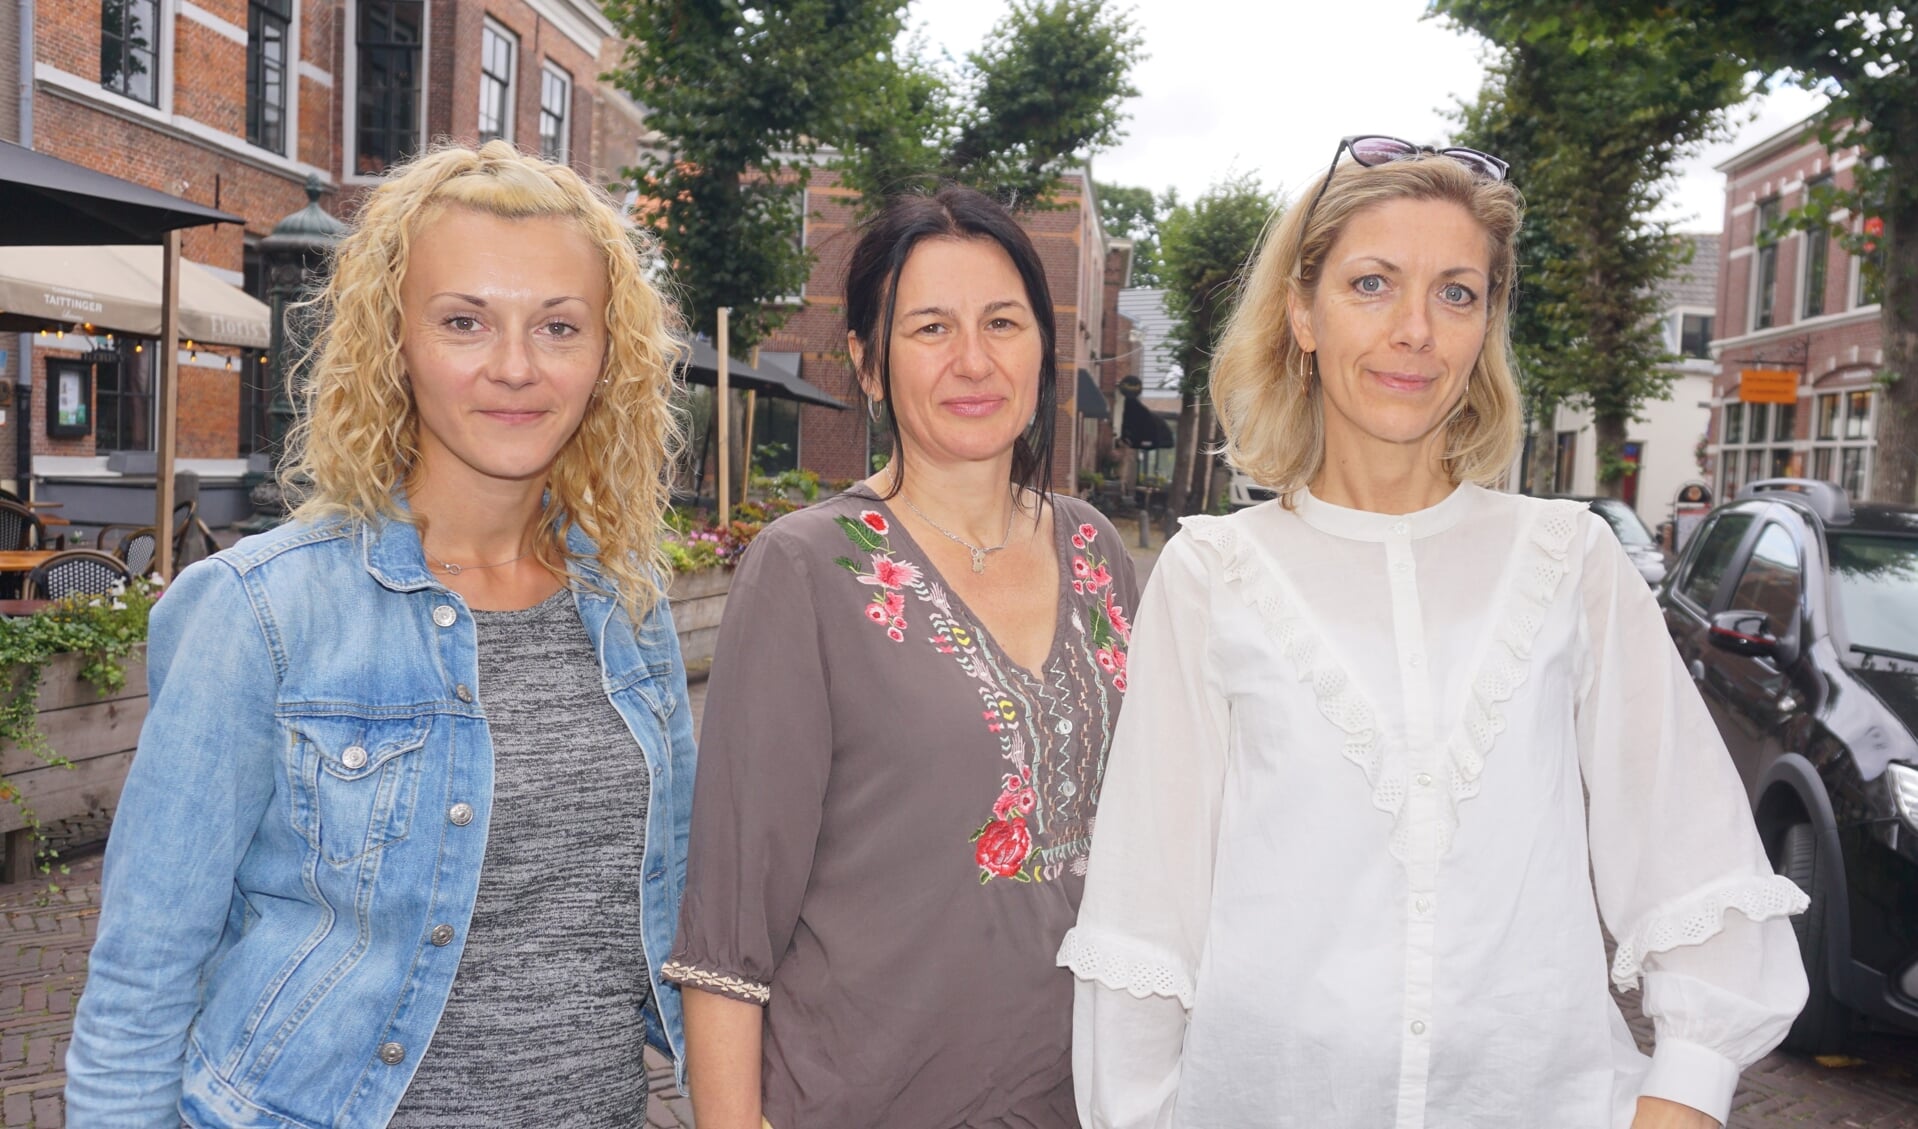 Olena, Inna en Olga. De drie Oekraïense vrouwen proberen in Voorschoten weer een leven op te bouwen. 'Vooral veel samen praten om de ervaringen te delen en te verwerken.' Foto: VSK 